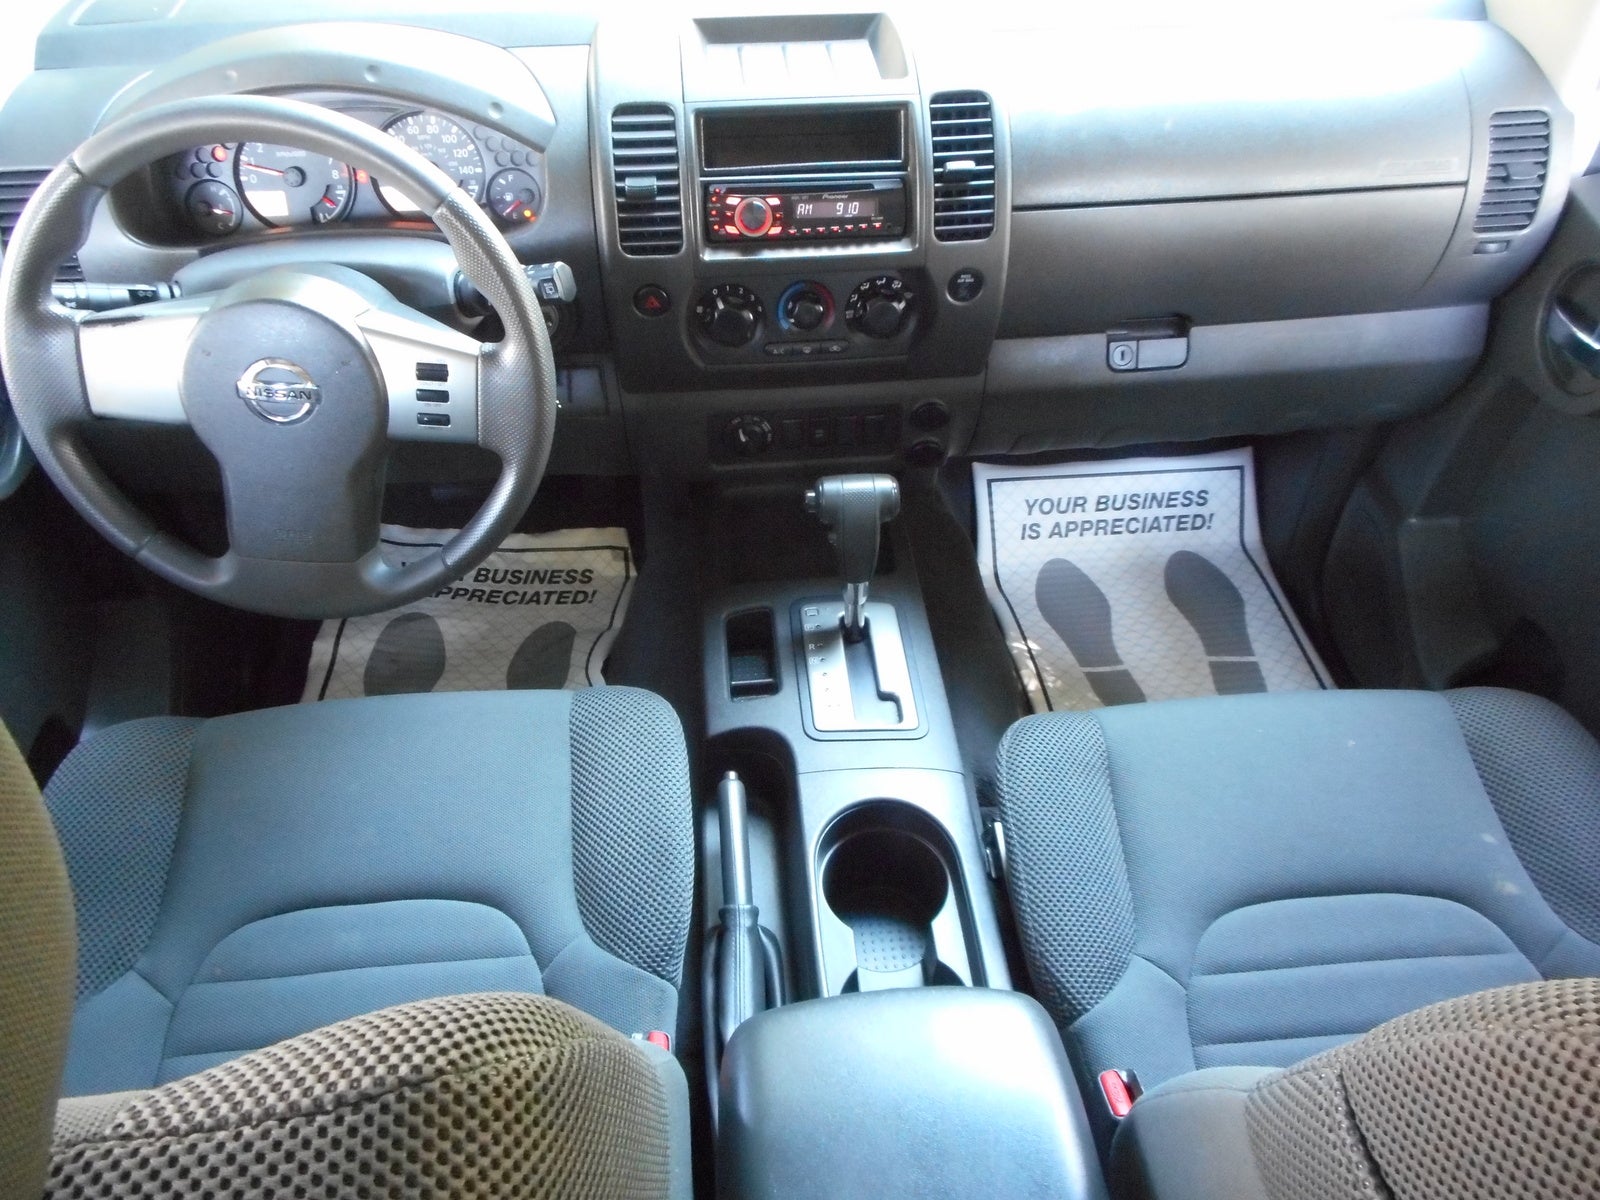 2007 Nissan Xterra - Interior Pictures - CarGurus